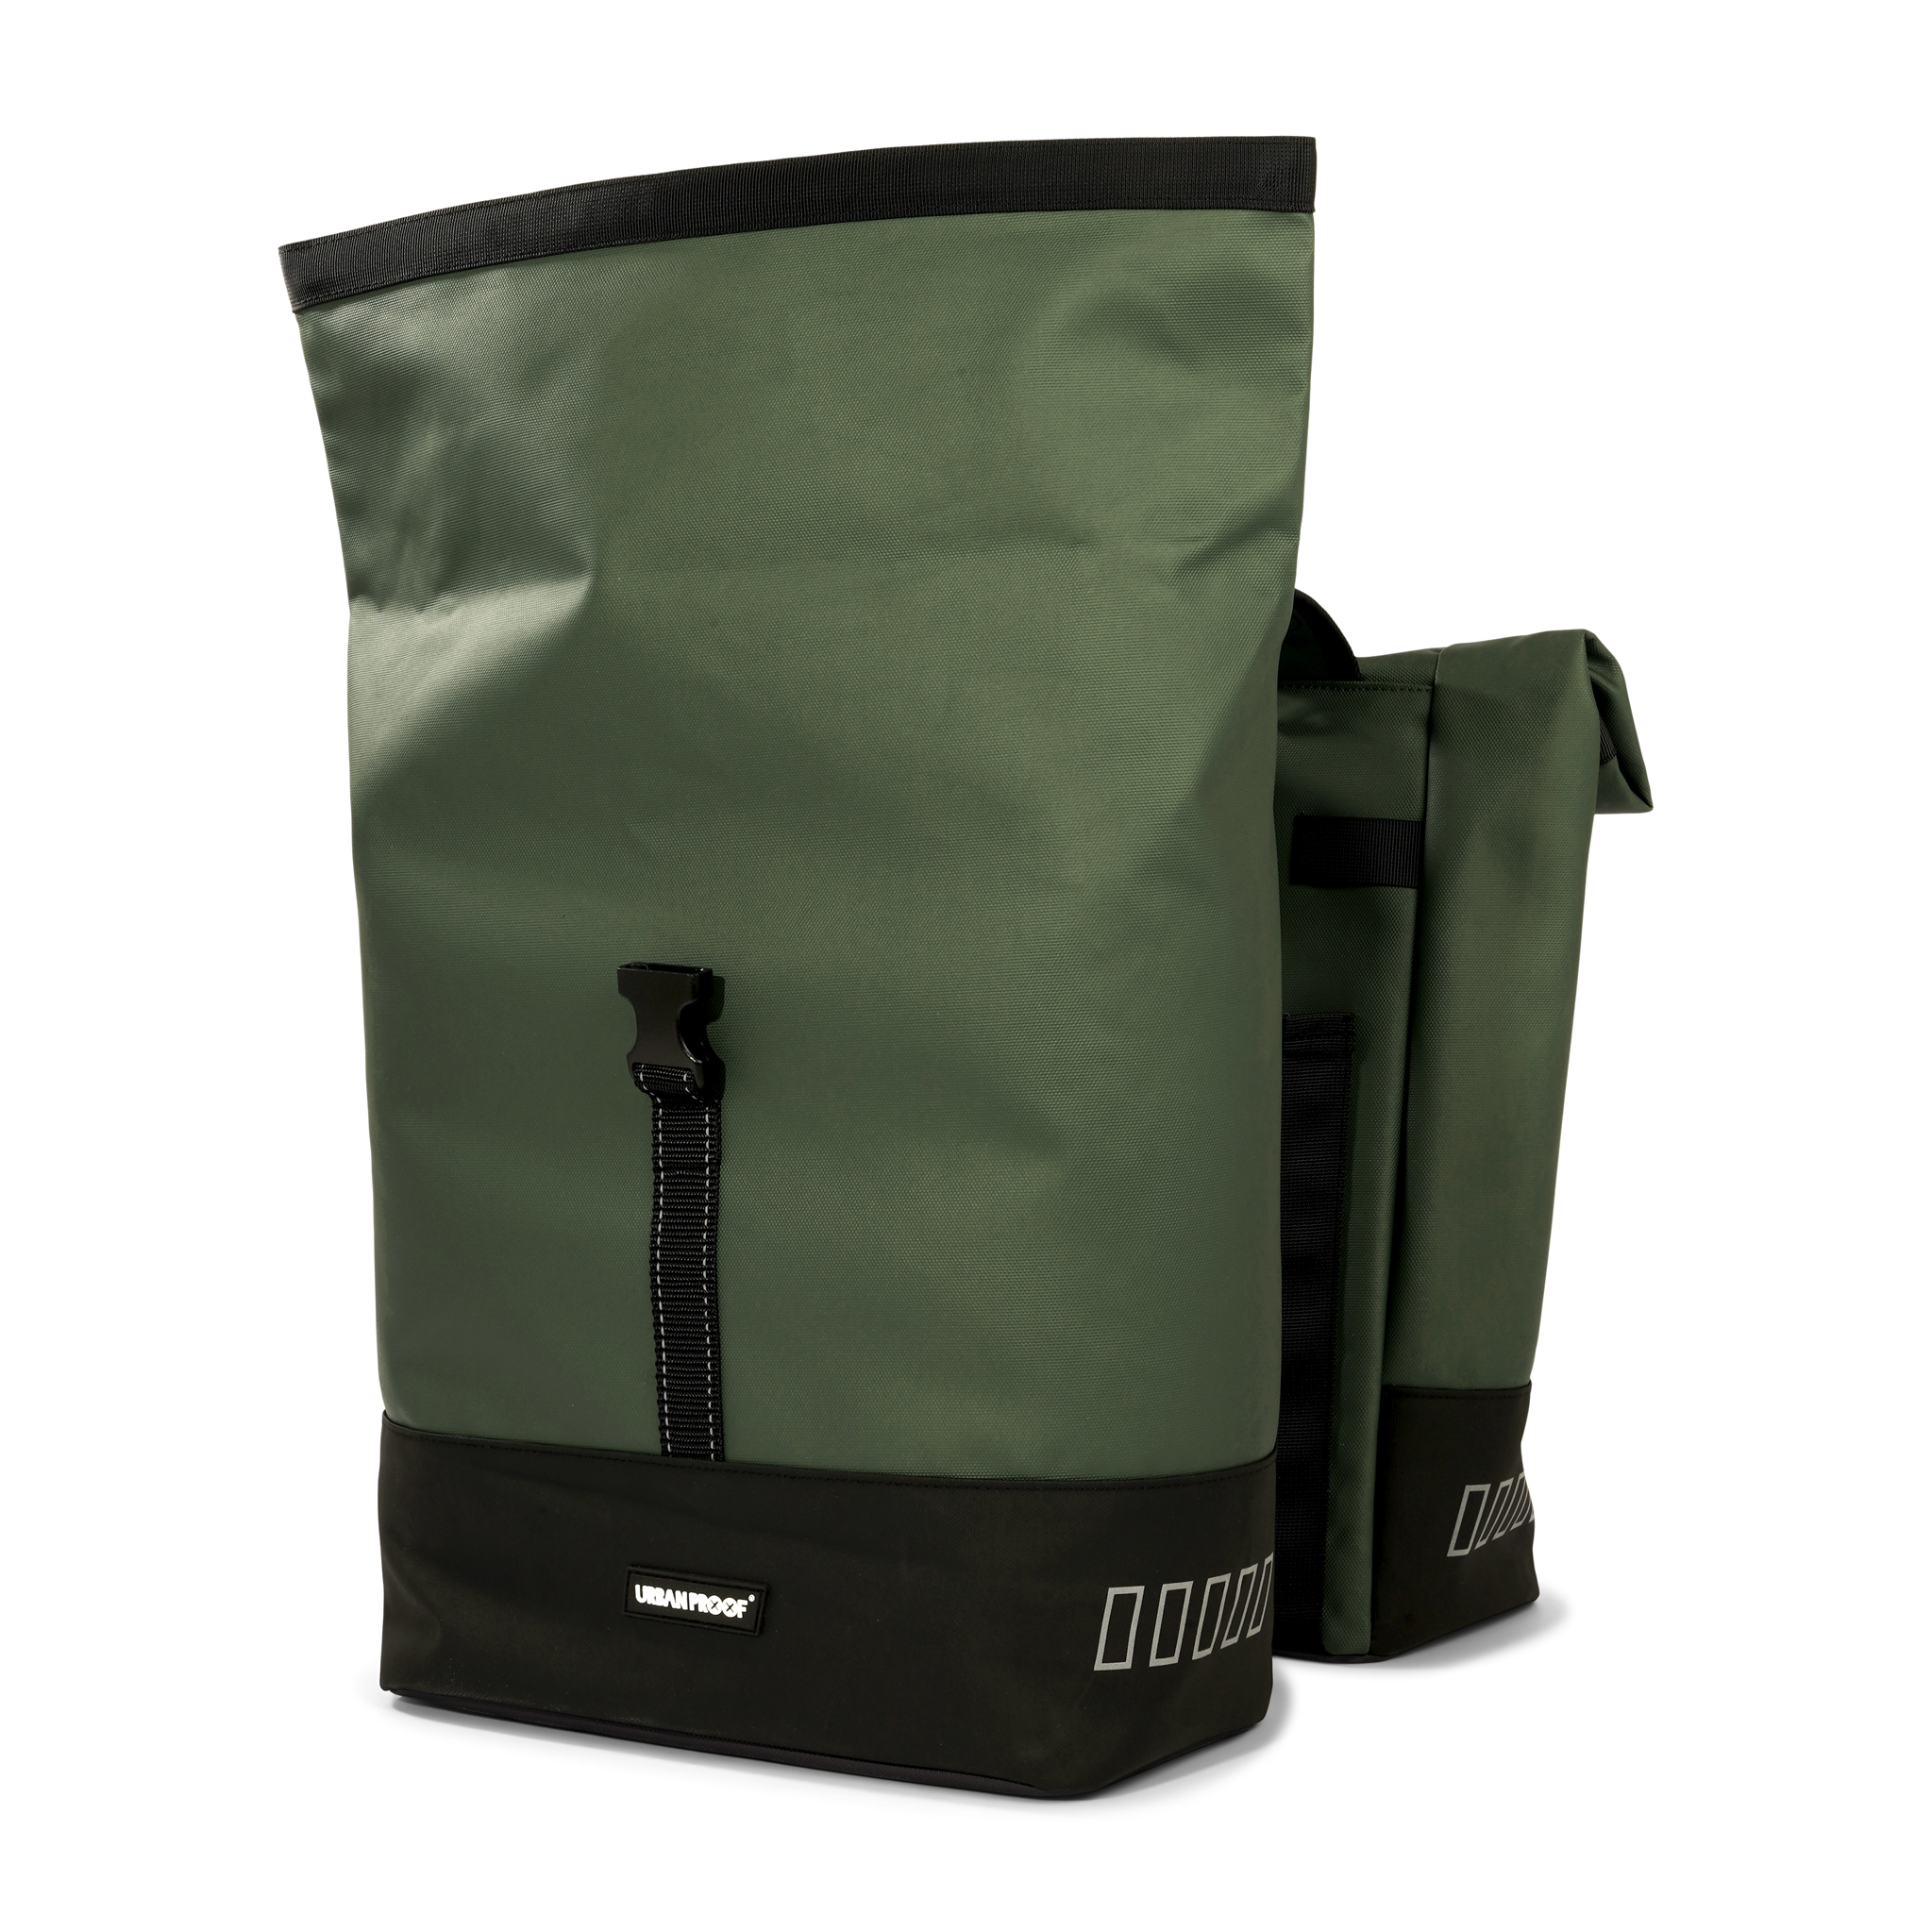 sacoche-double-rolltop-sac-de-velo-urban-proof-vert-kaki-bag-green